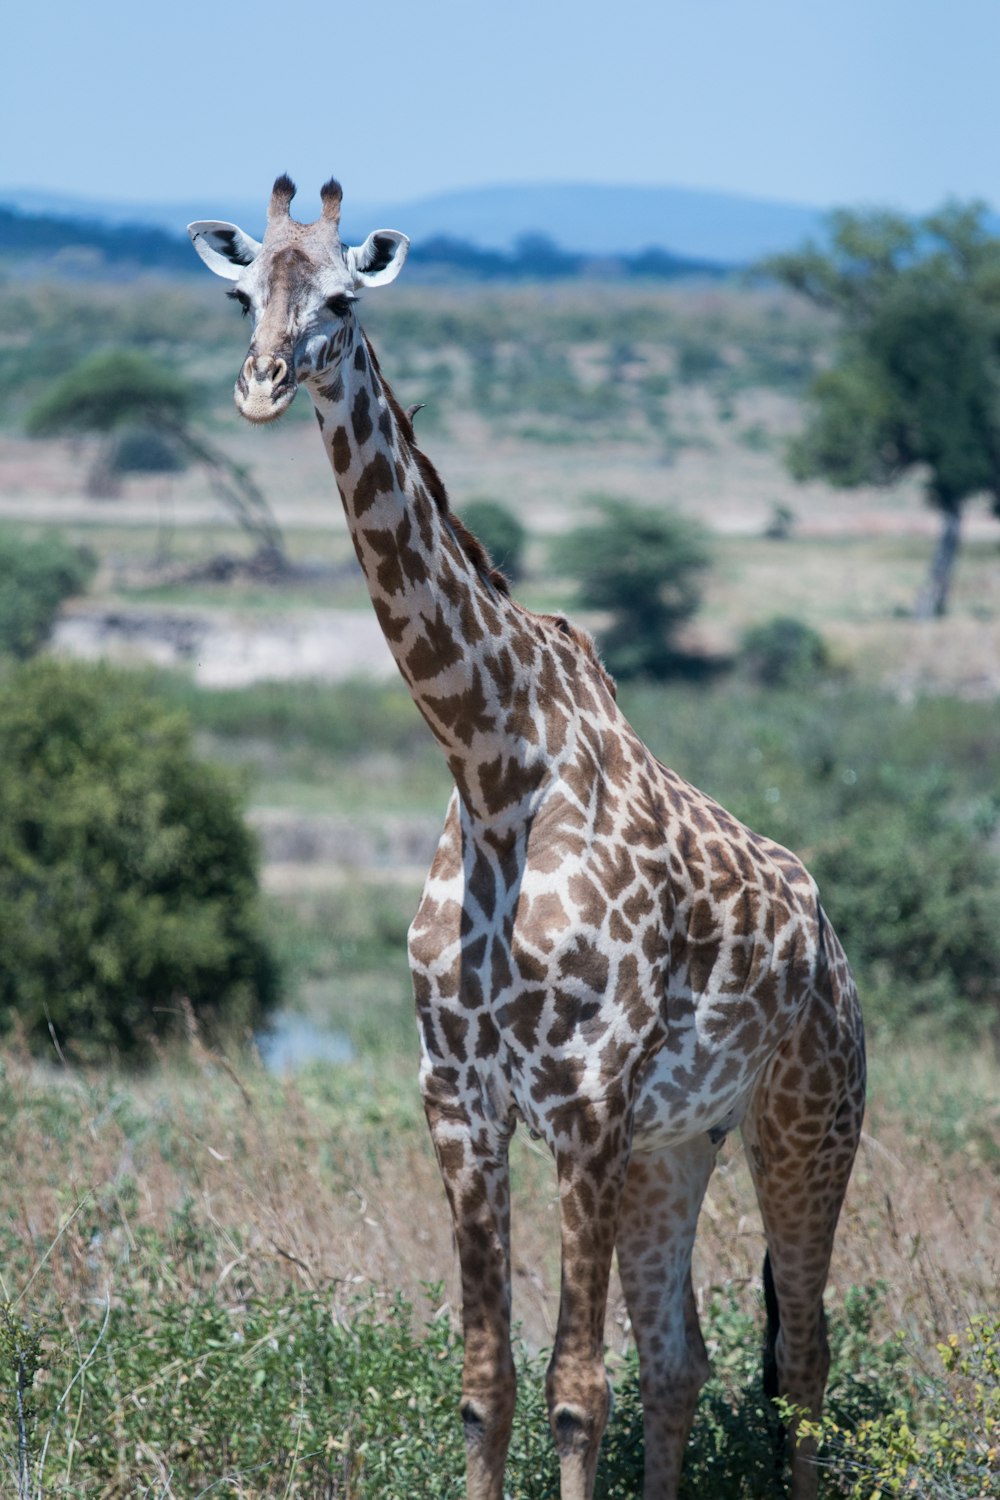 giraffe on field of grass